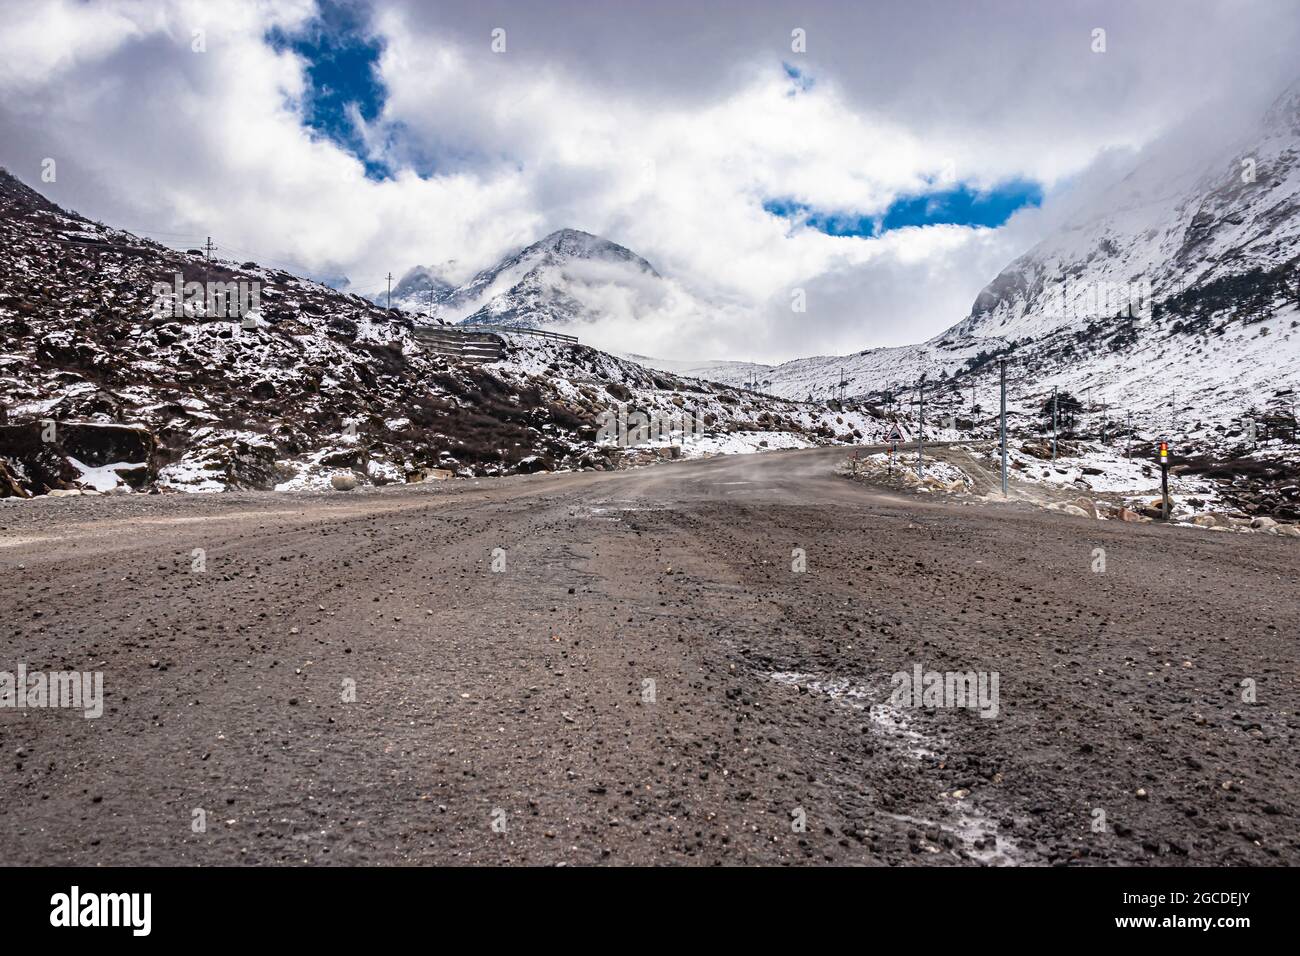 carretera aislada de asfalto con fondo de montaña nevado y cielo asombroso por la mañana se toma una imagen en el paso de sela tawang arunachal pradesh. Foto de stock